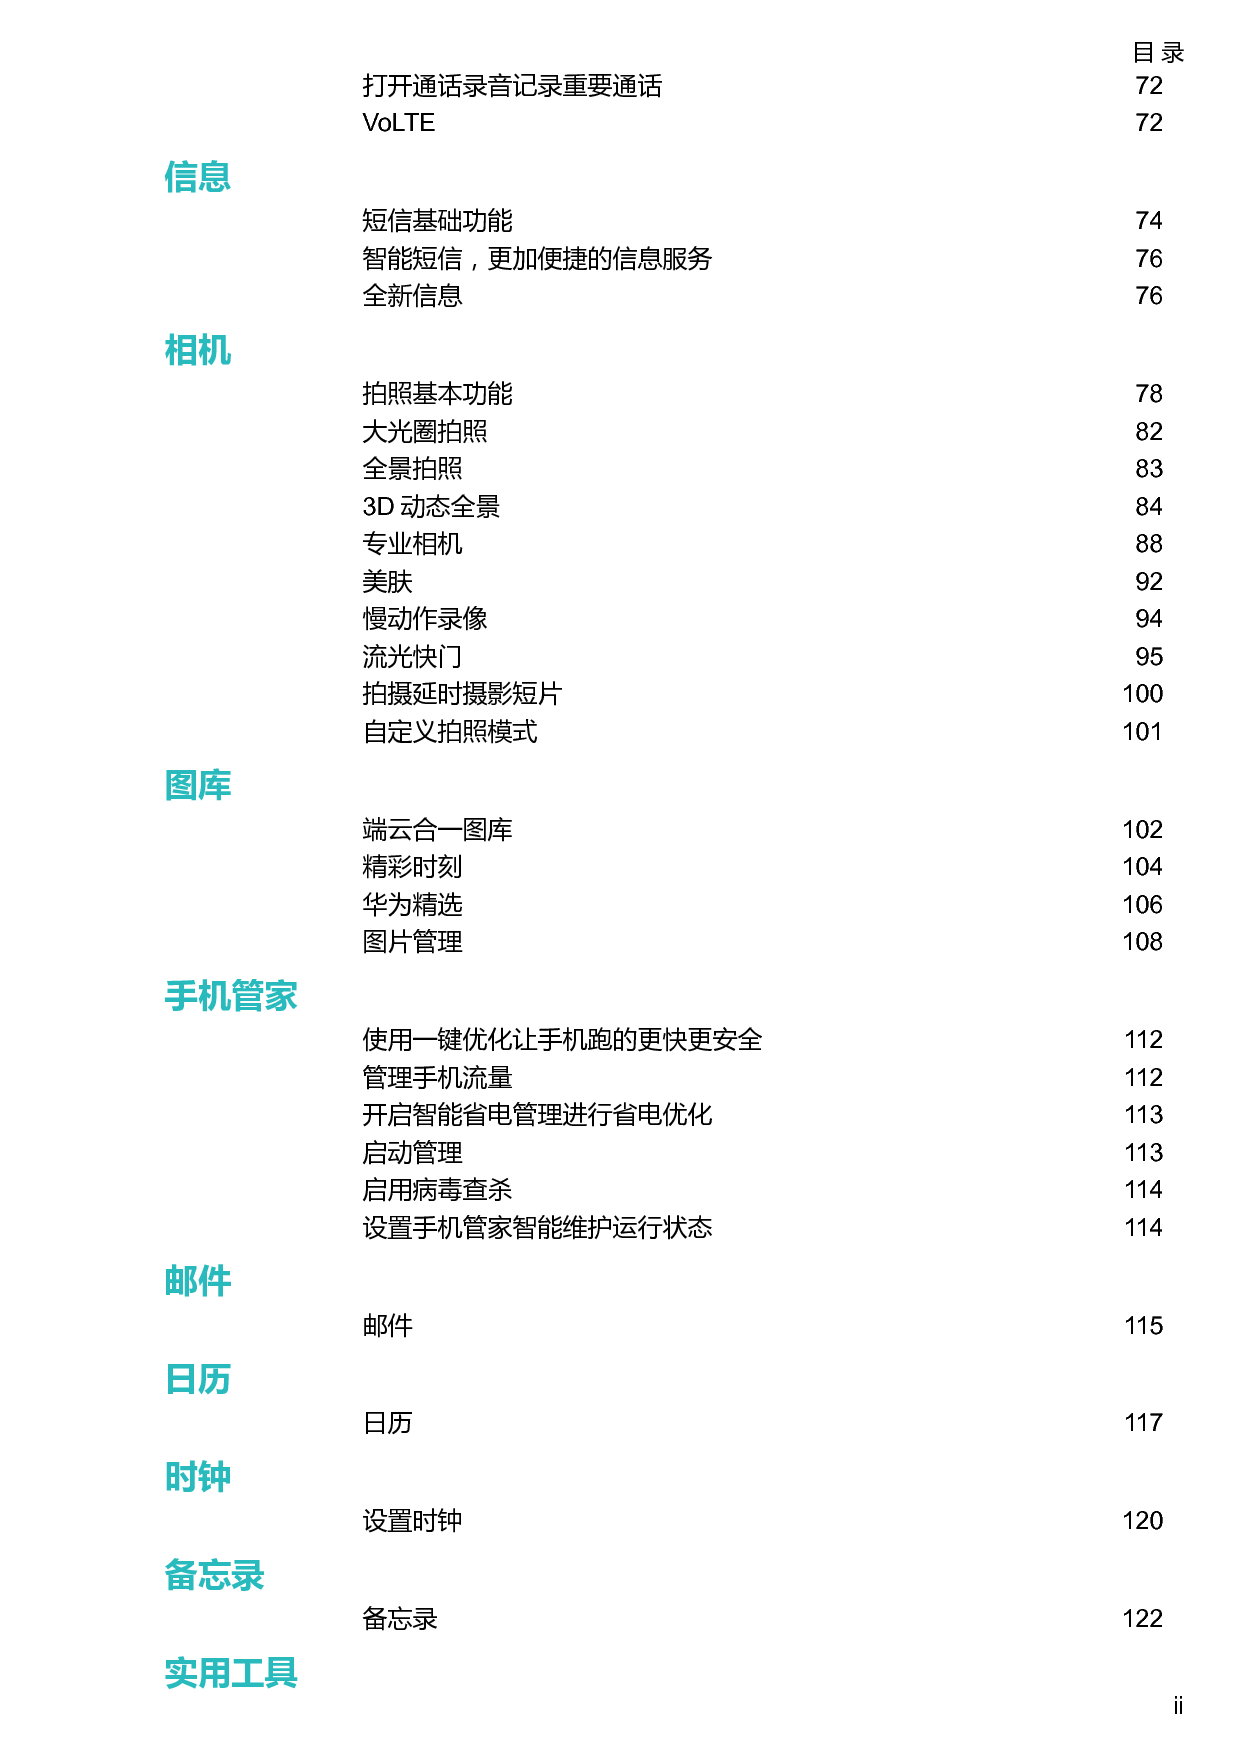 华为 Huawei Mate 10 Pro BLA-AL00,BLA-TL00 用户指南 第2页